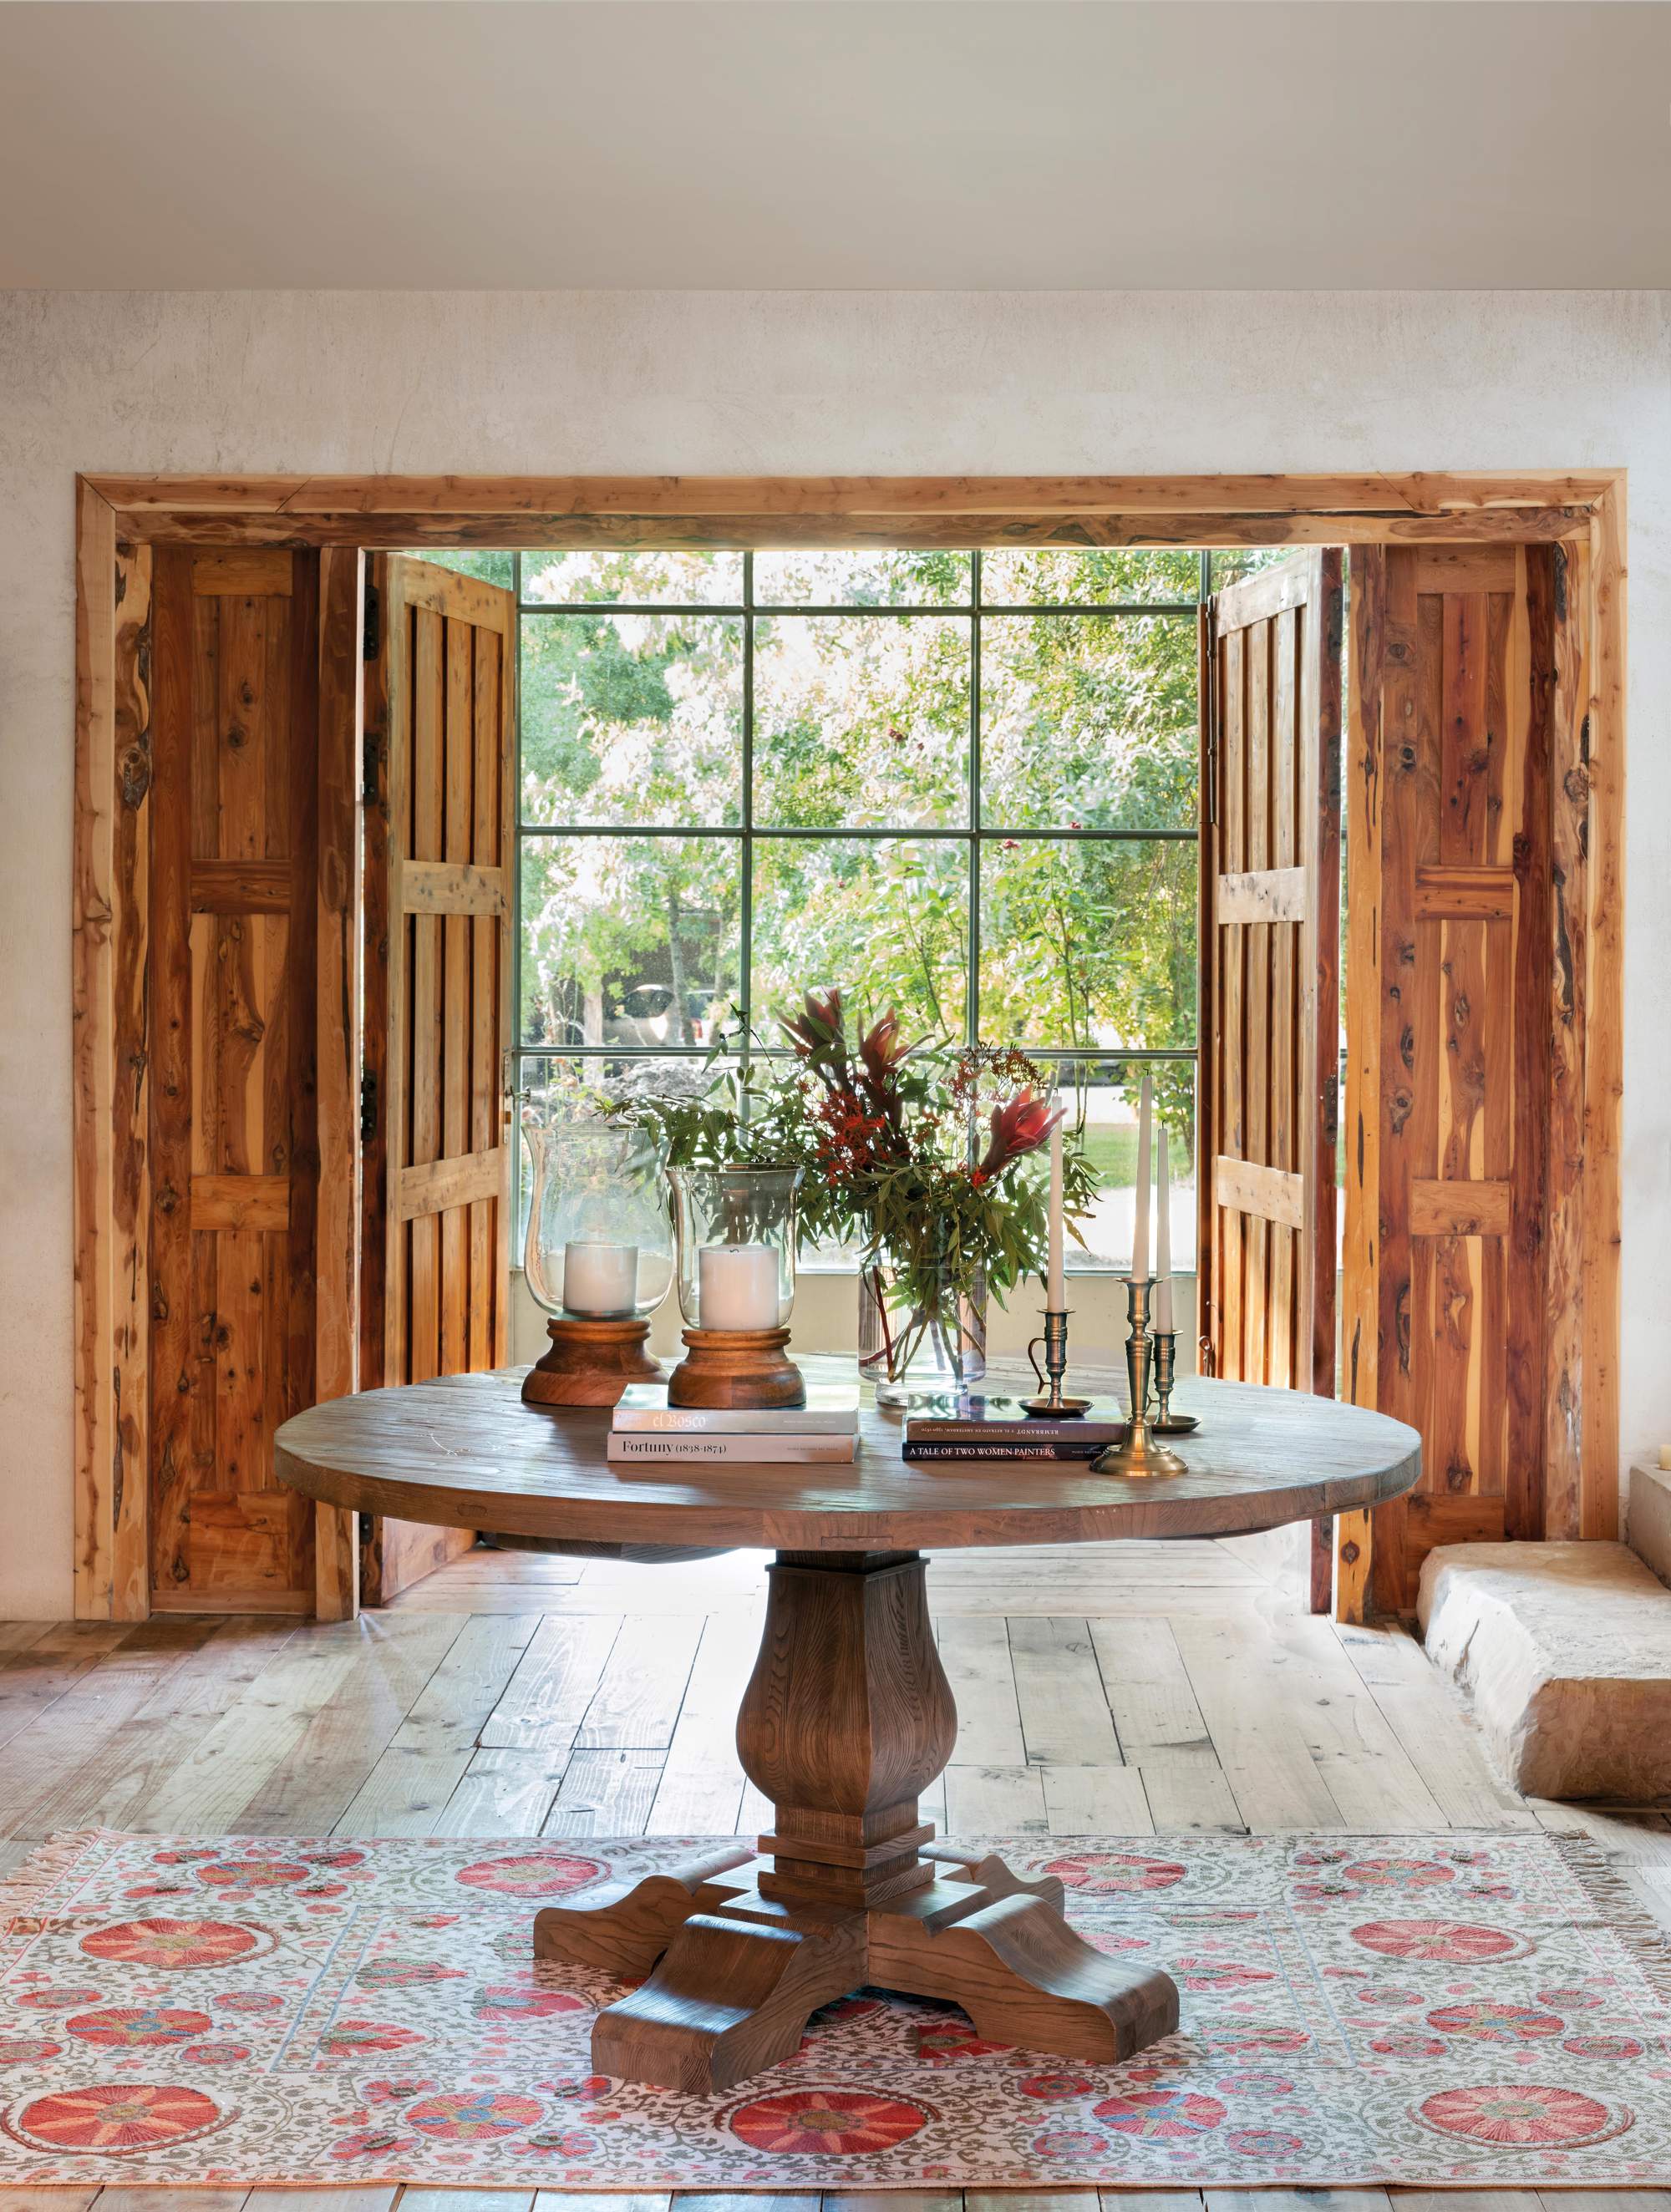 Recibidor con mesa redonda de madera en el centro, alfombra estampada y contraventanas de madera